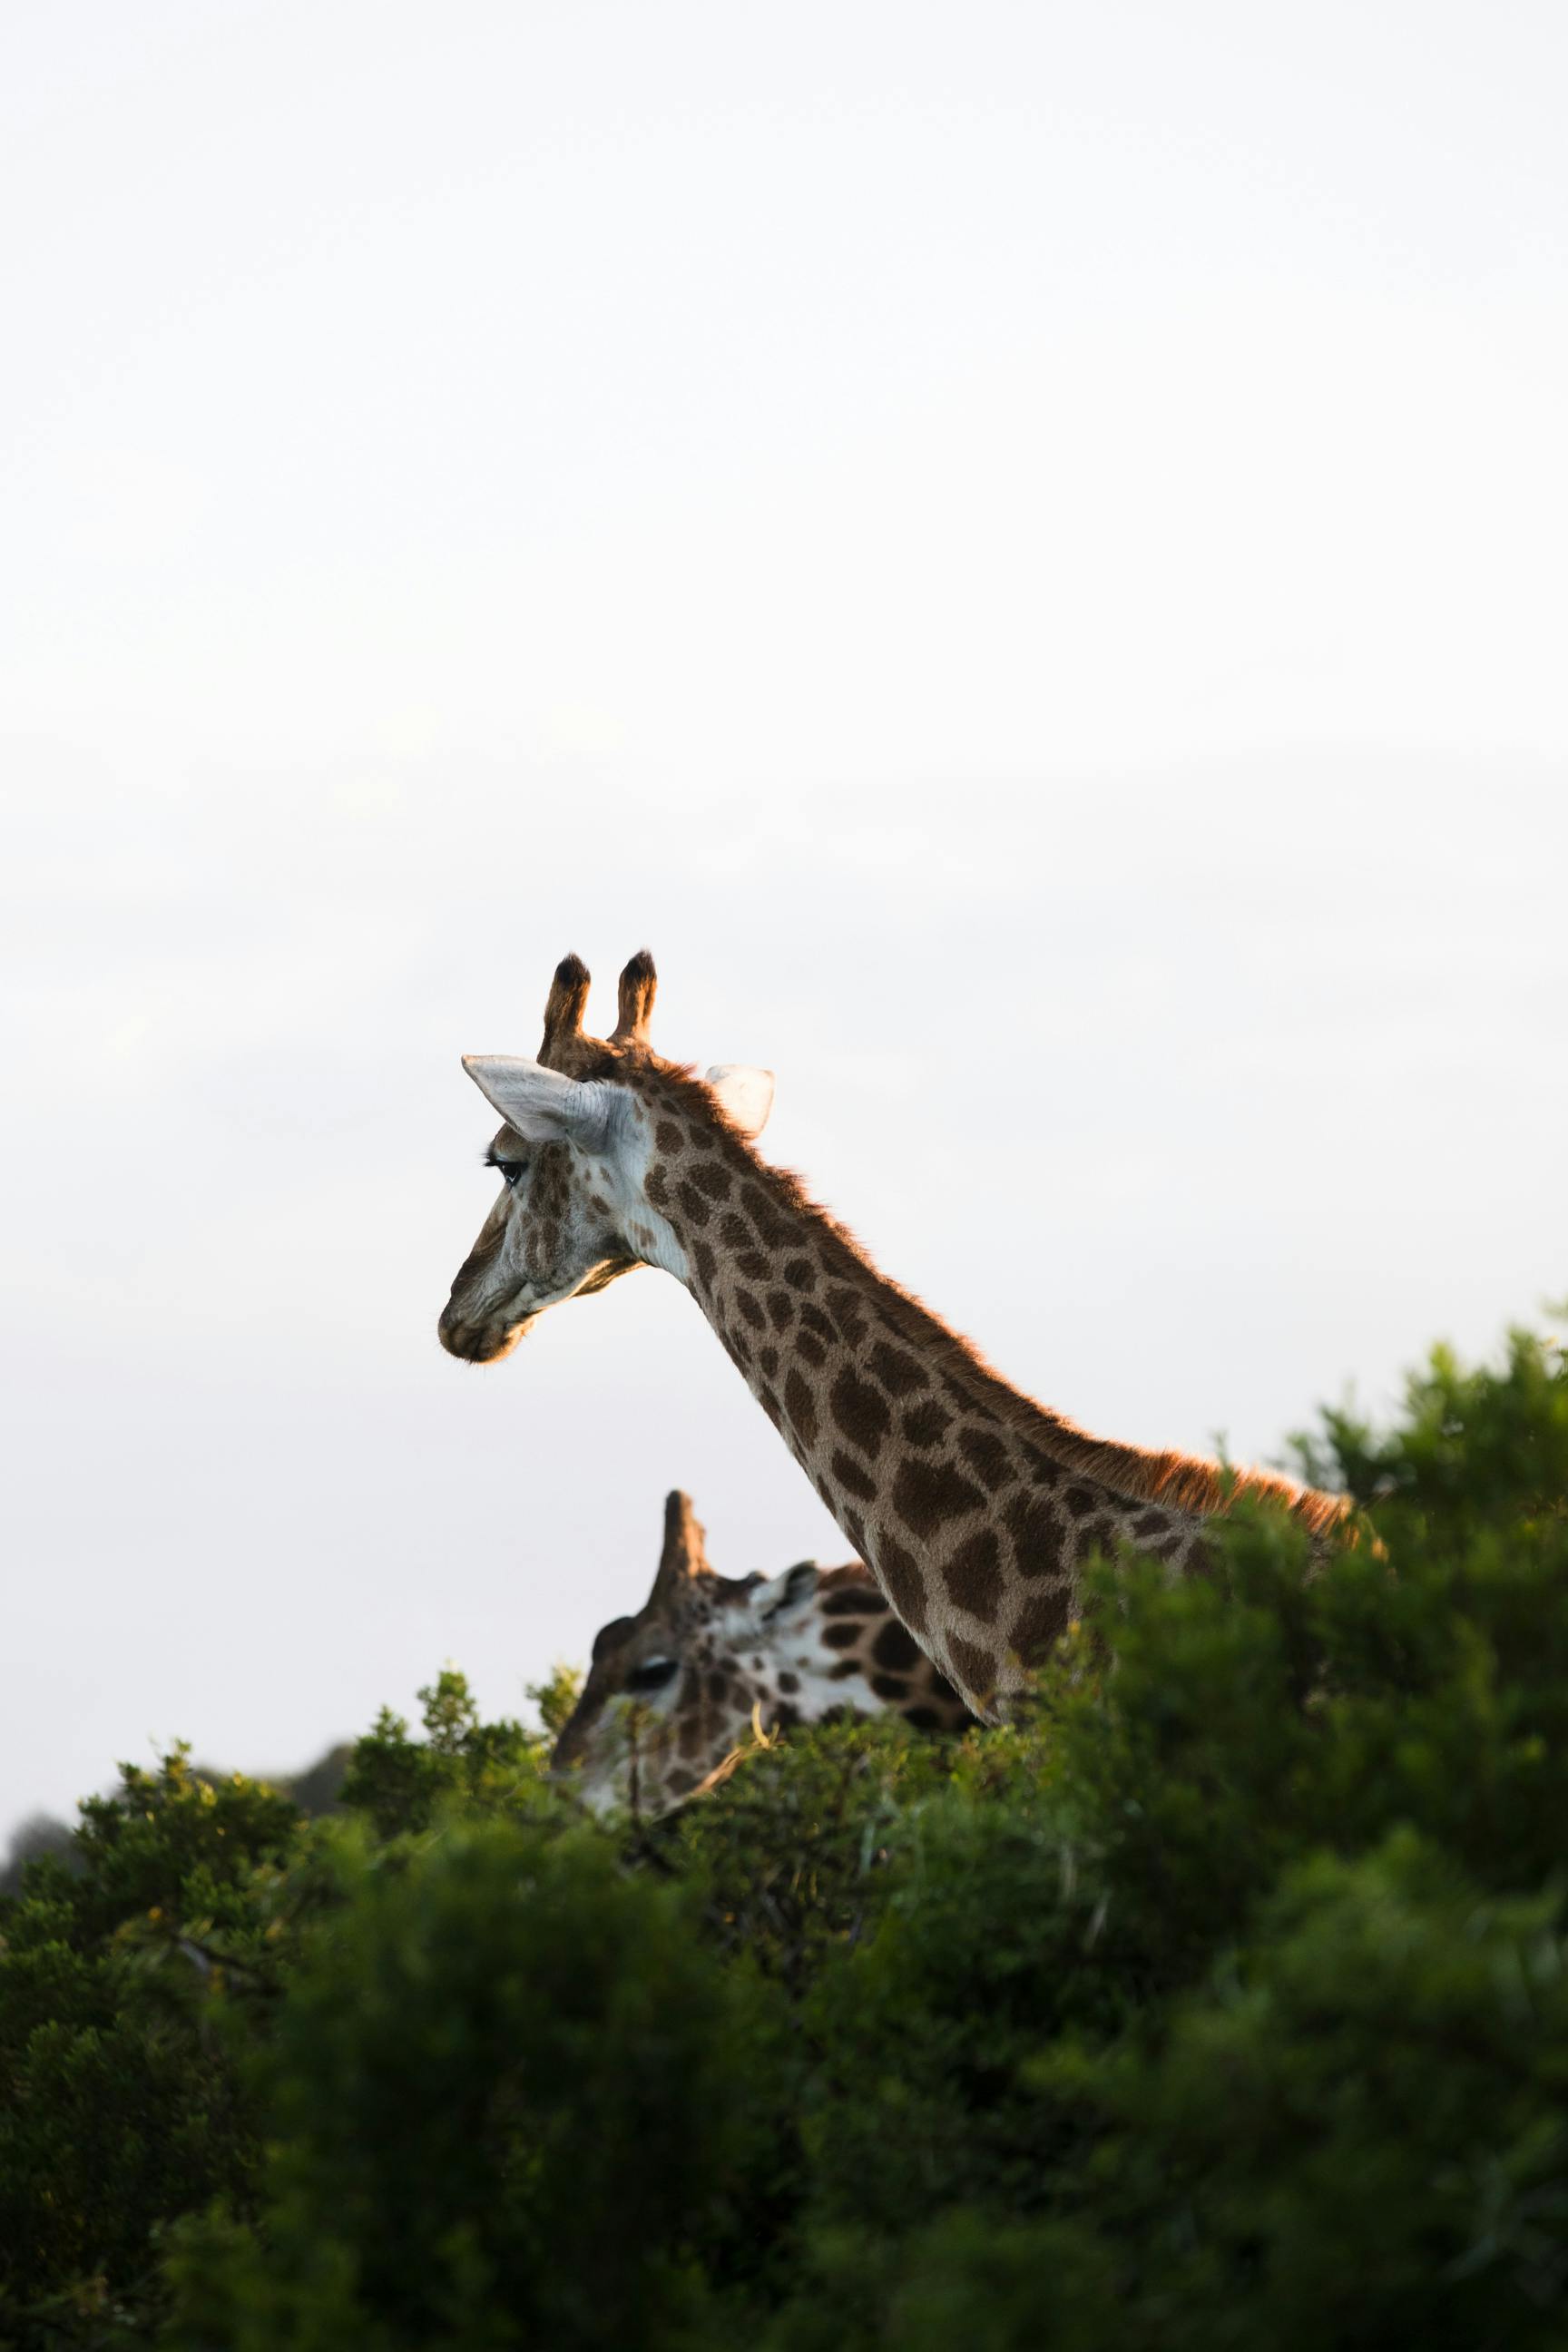 giraffes eating shrub leaves under white sky